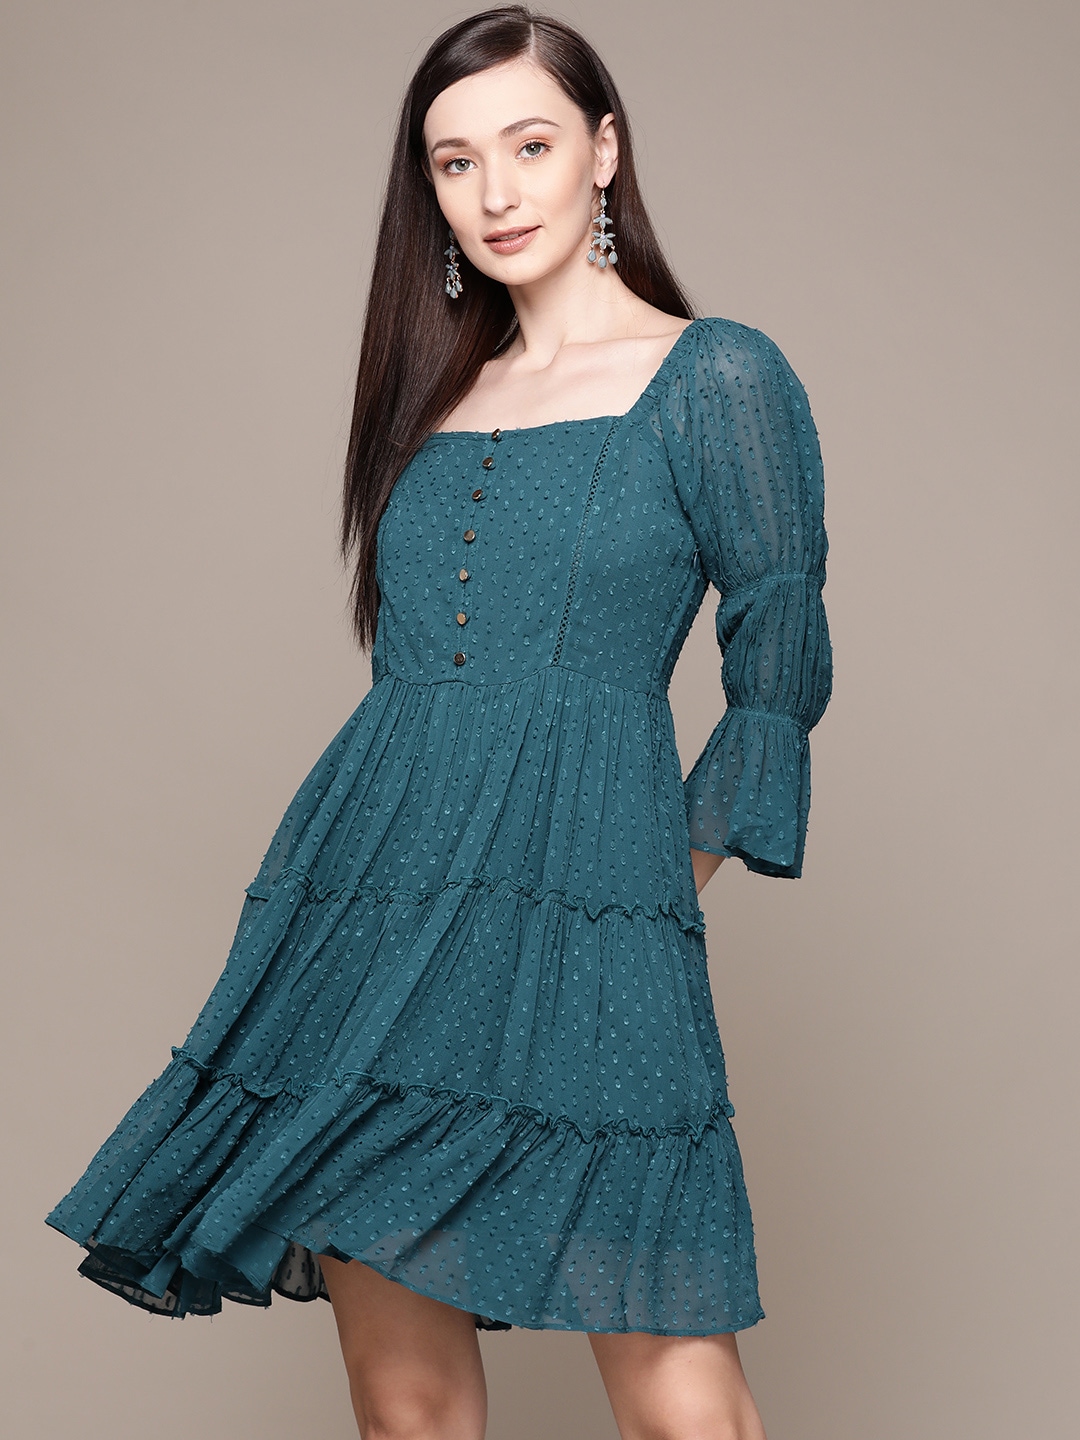 Label Ritu Kumar Blue Georgette Dress Price in India